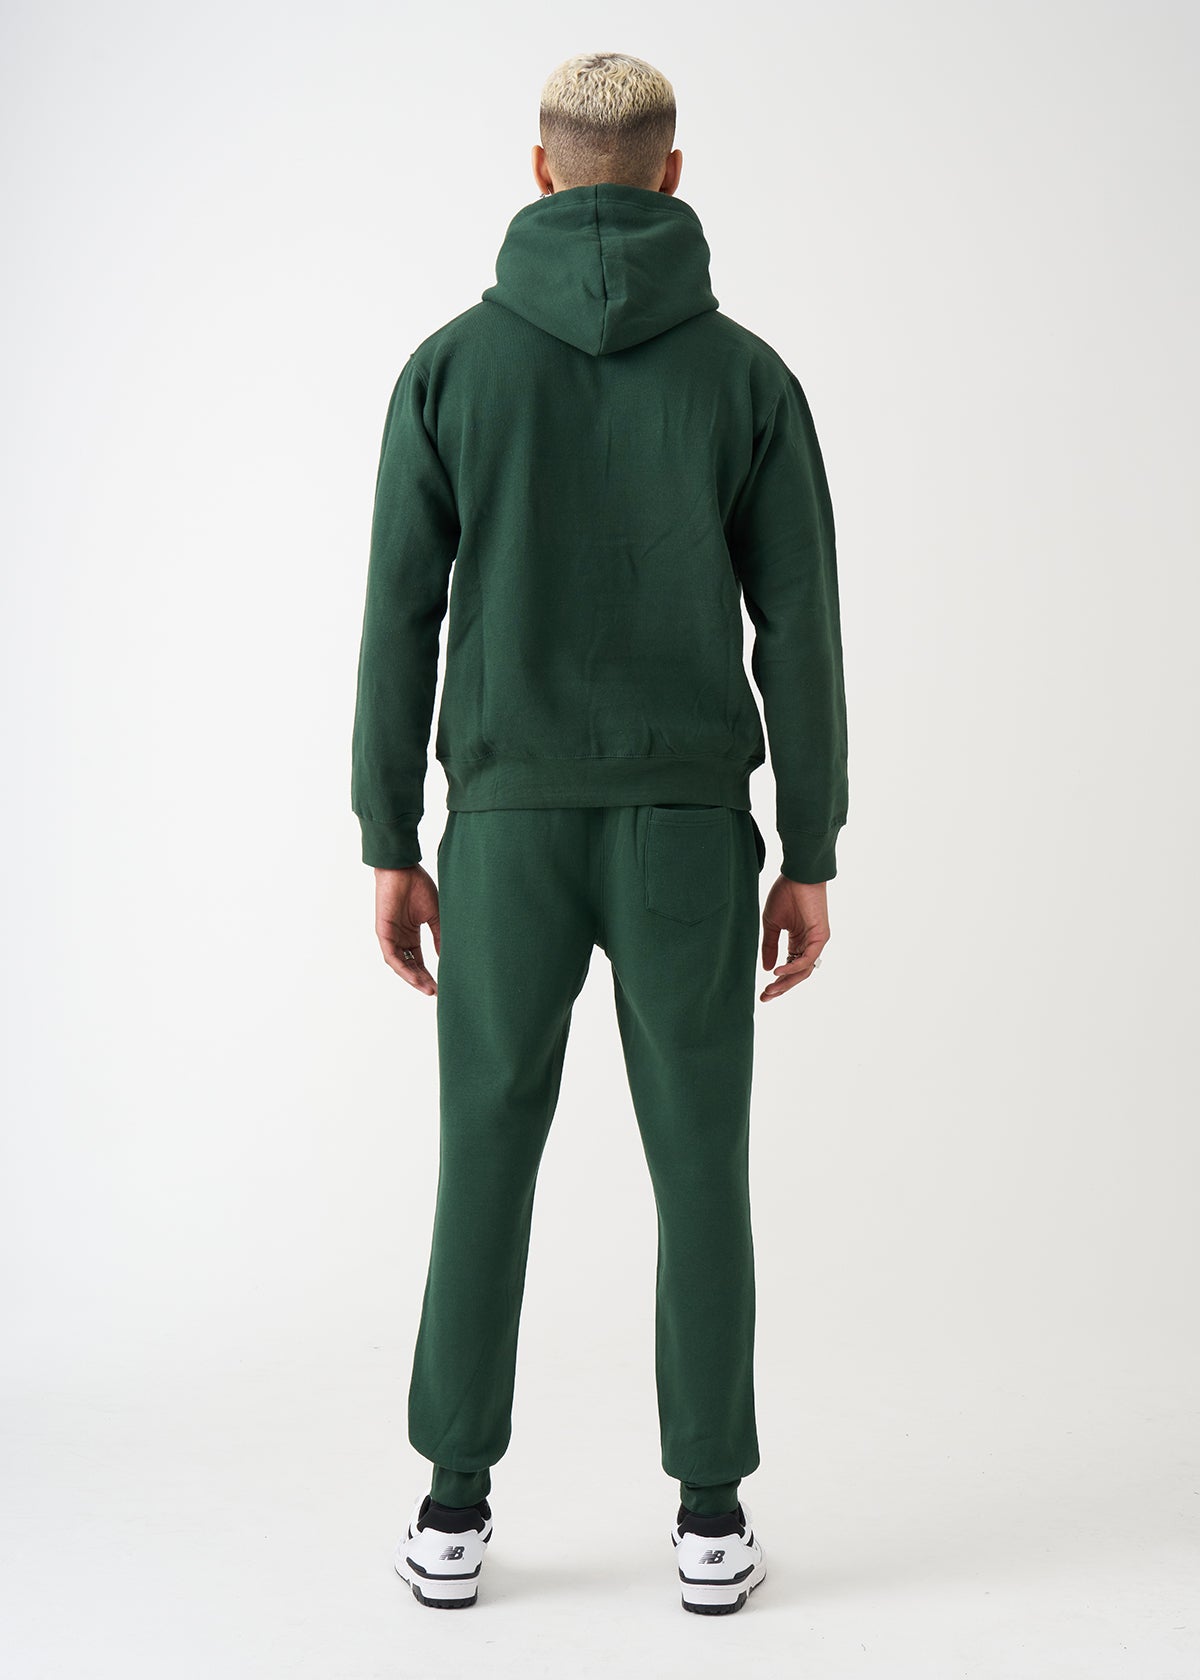 Hunter Green Heavy Blend Fleece SweatSuit